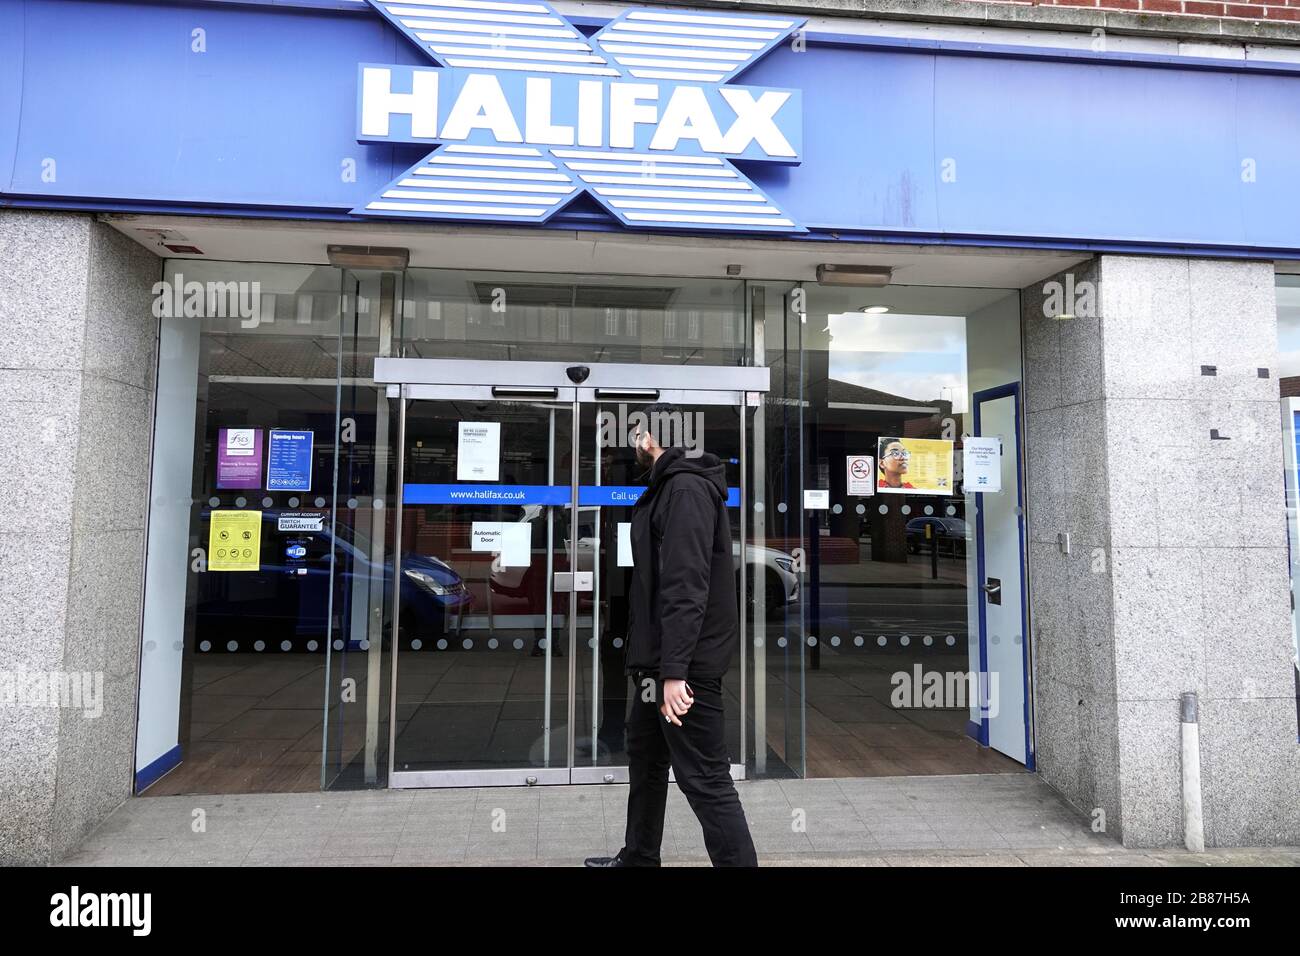 pic show: Halifax succursale chiuso Hornchurch Greater London Life continua o no in questo sobborgo esterno di Londra / Essex con alcuni negozi chiusi e altri Foto Stock